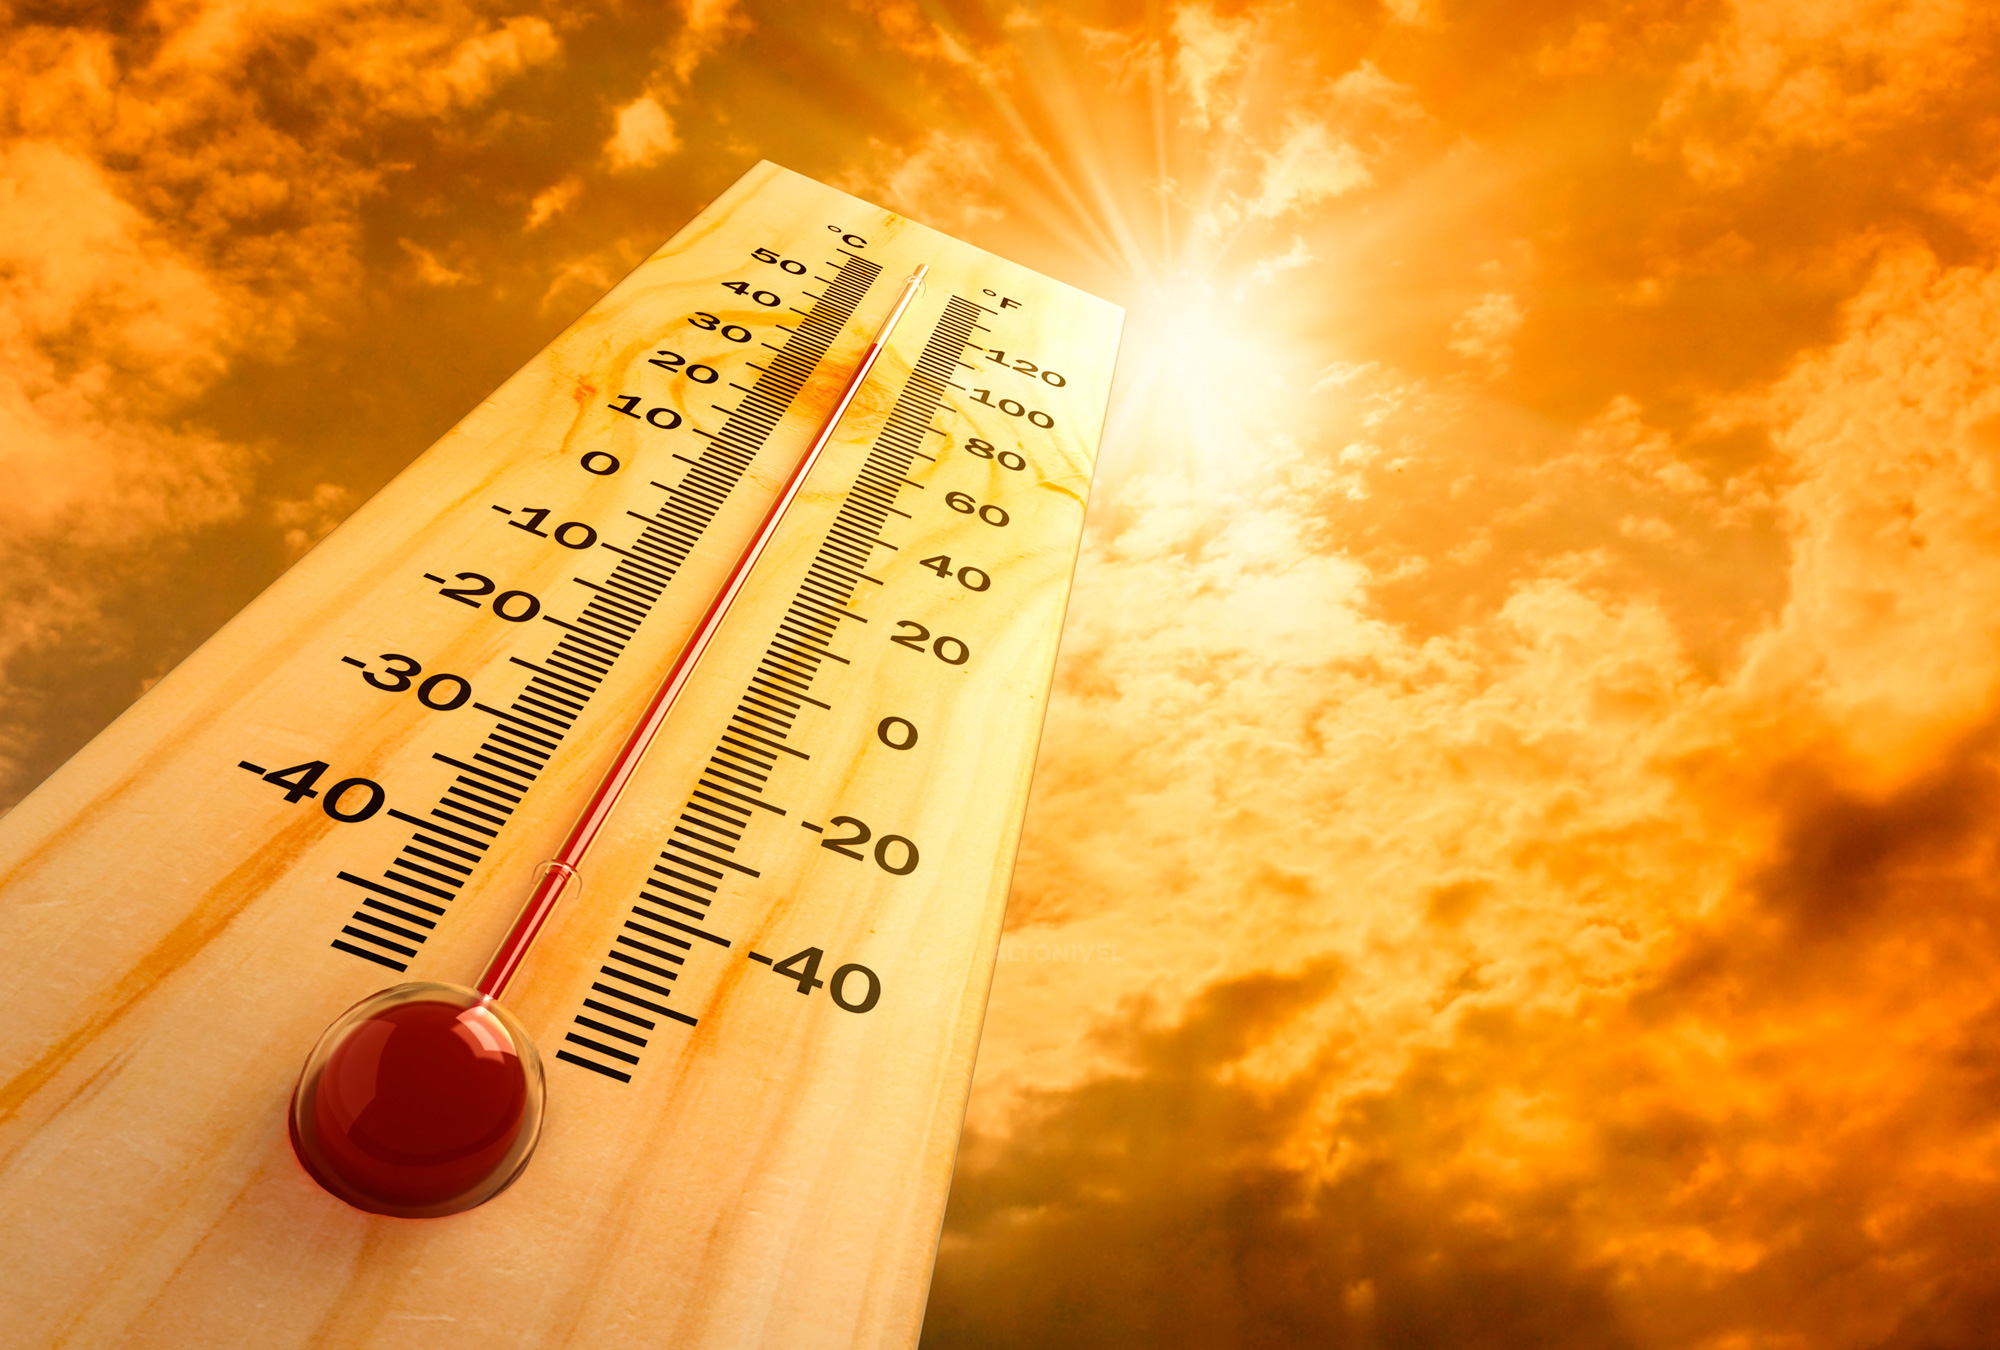 ¡Qué calor! 18 estados esperan temperaturas de más de 40 grados